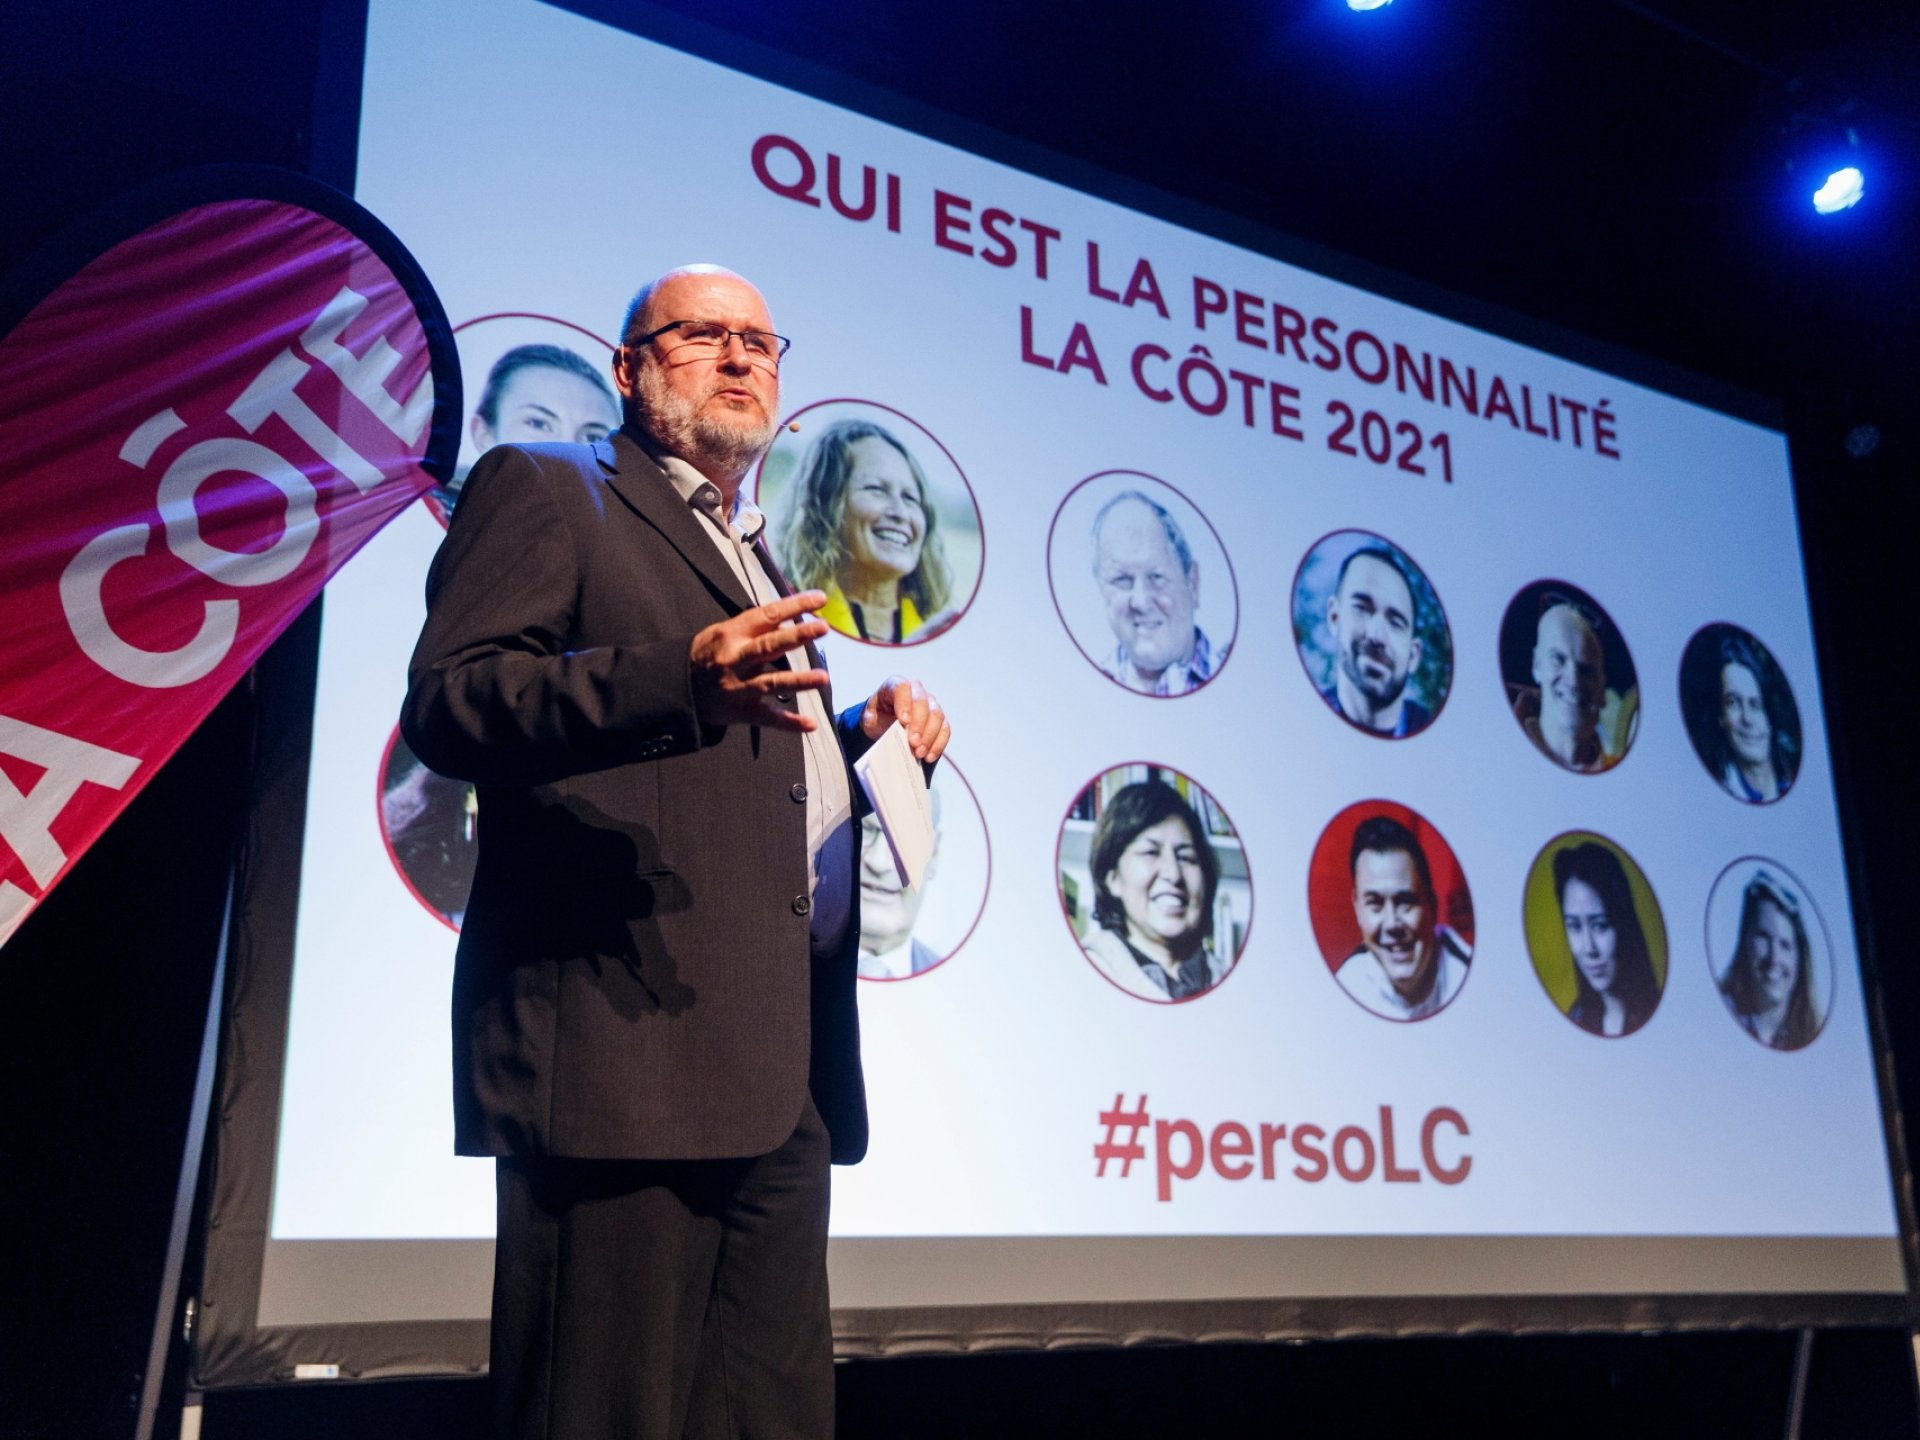 Michel Jotterand, rédacteur en chef de La Côte, présente les lauréats de la personnalité La Côte 2021.